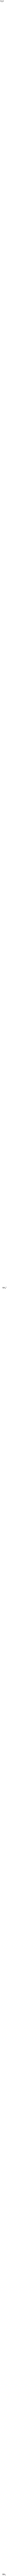 Diammonium borate ((NH4)2B4O7)